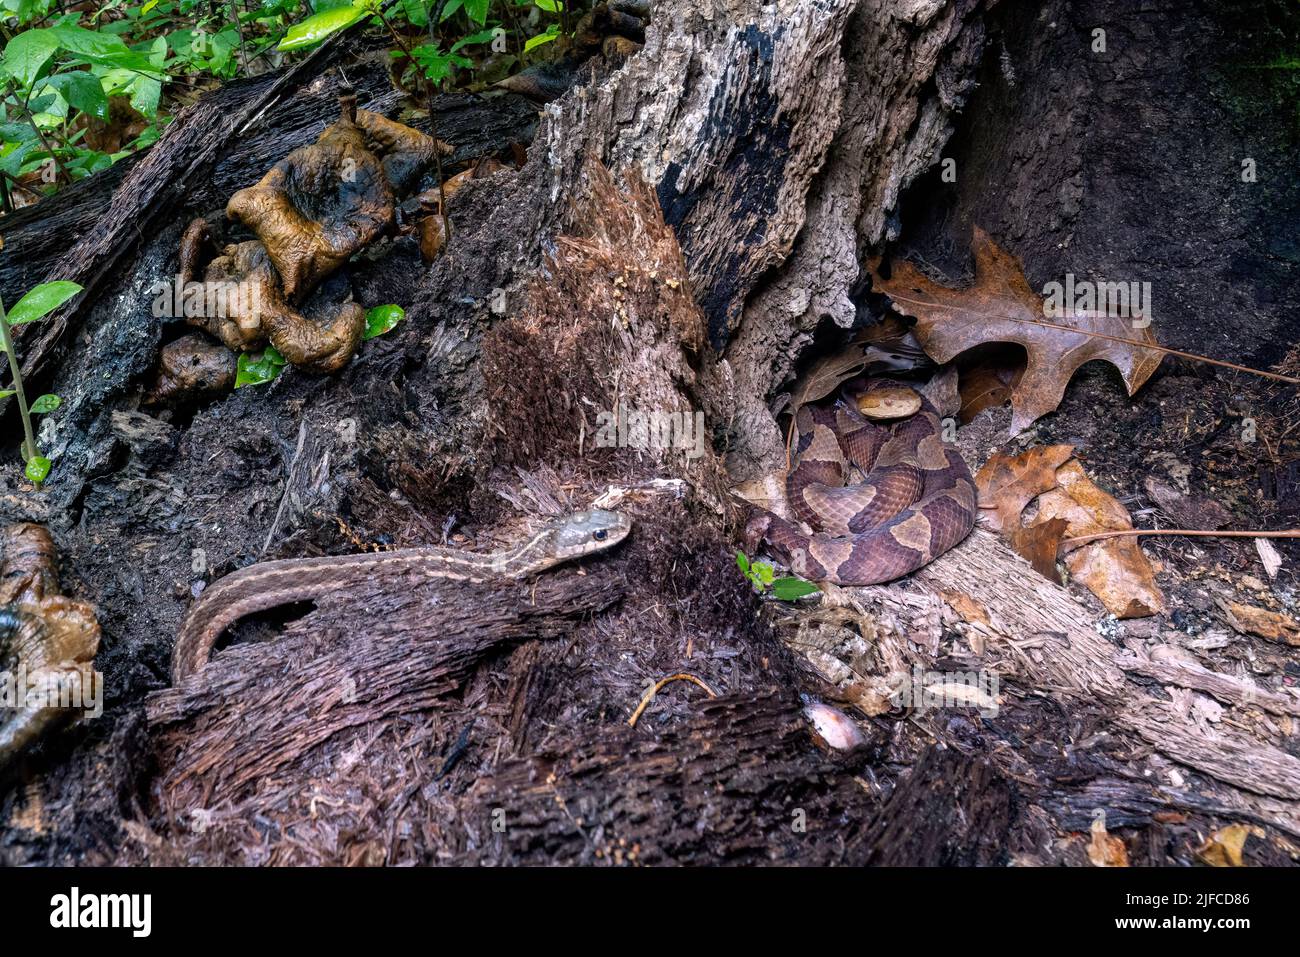 La cabeza de cobre oriental (Agkistrodon contortrix) se enrolla en el tocón de un árbol mientras se acerca una víbora de algartra oriental (Thamnophis sirtalis sirtalis) Foto de stock